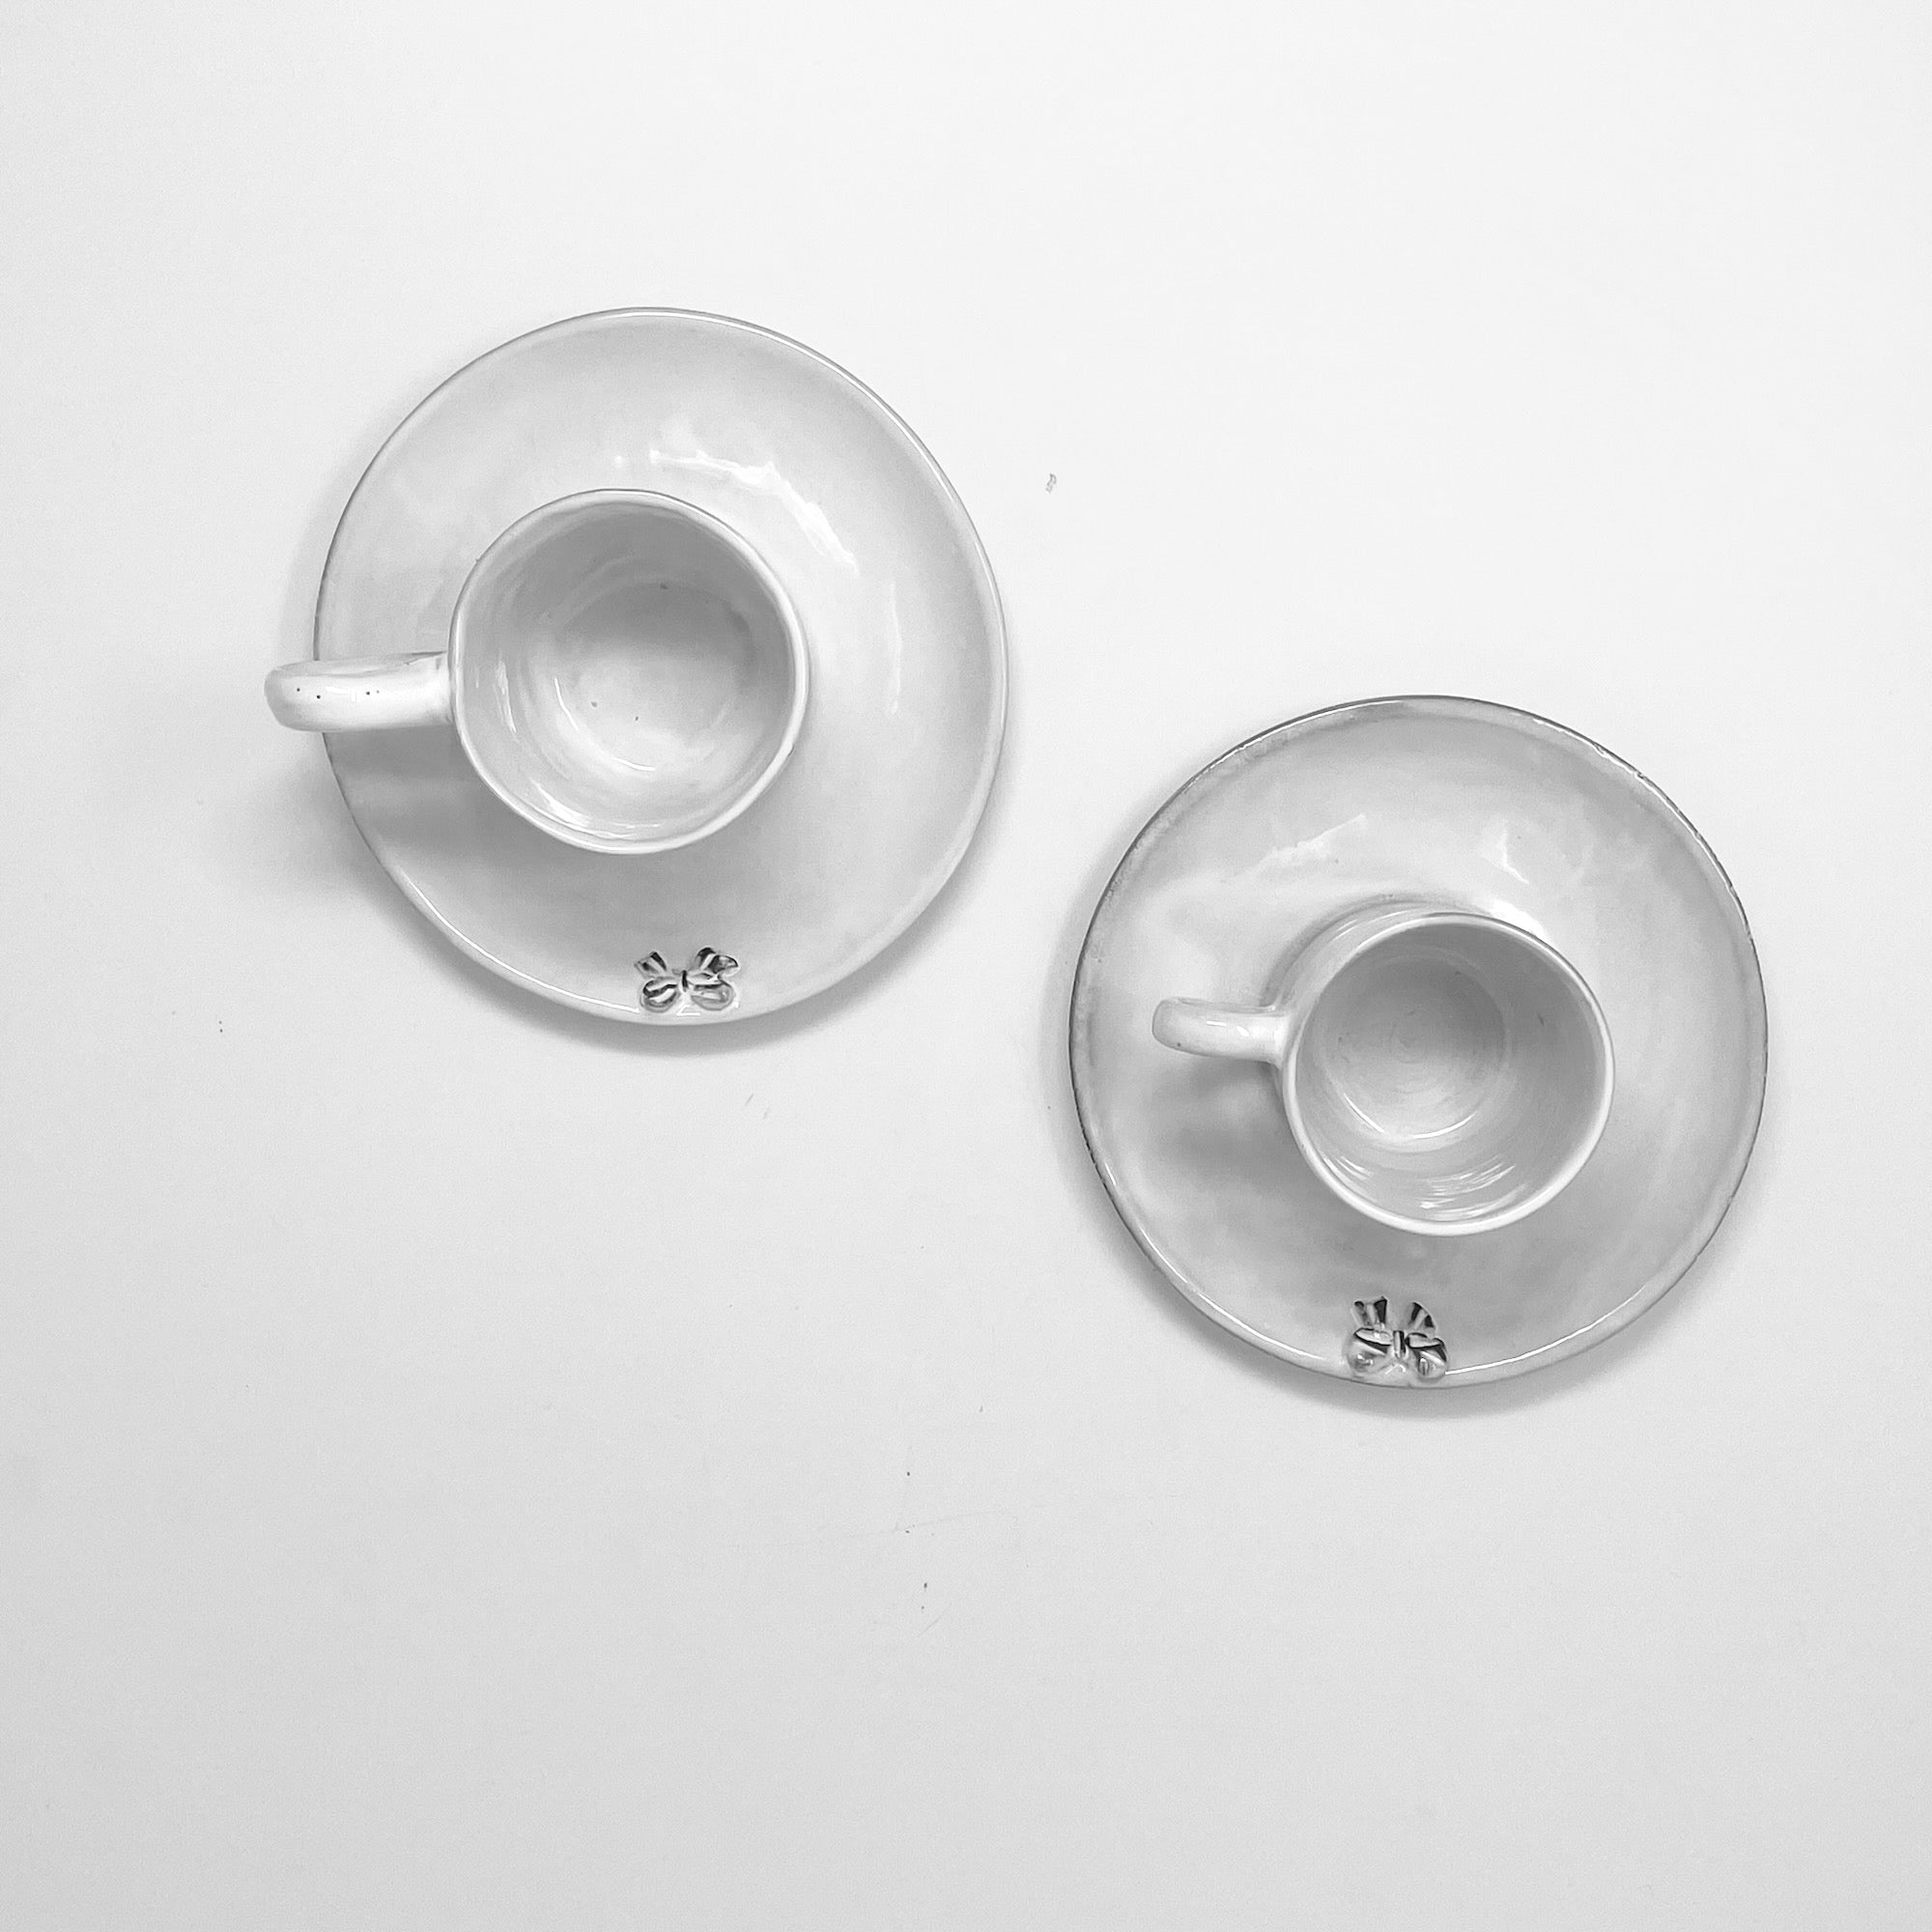 2x Small mug and saucer